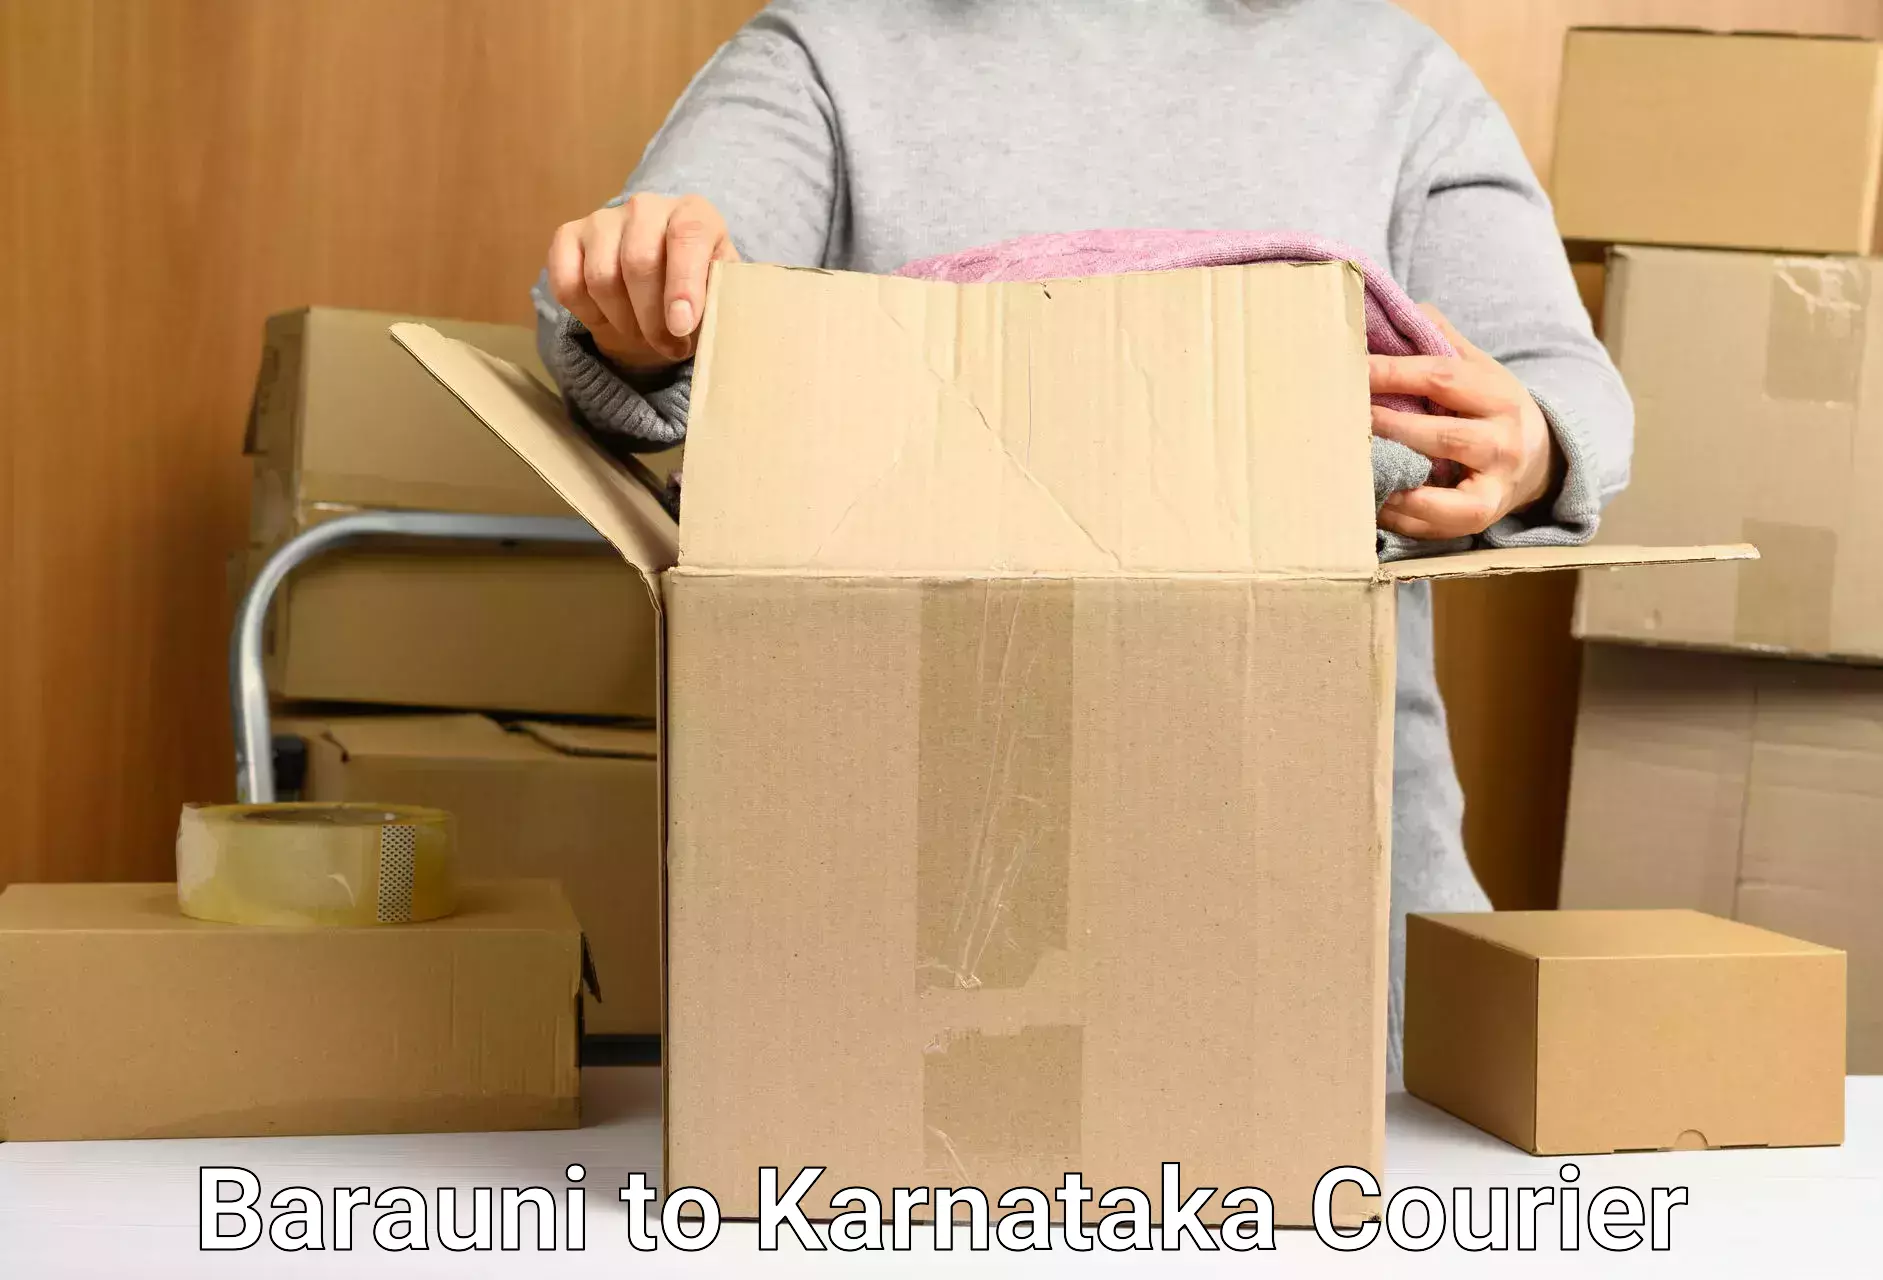 Online shipping calculator Barauni to Karnataka